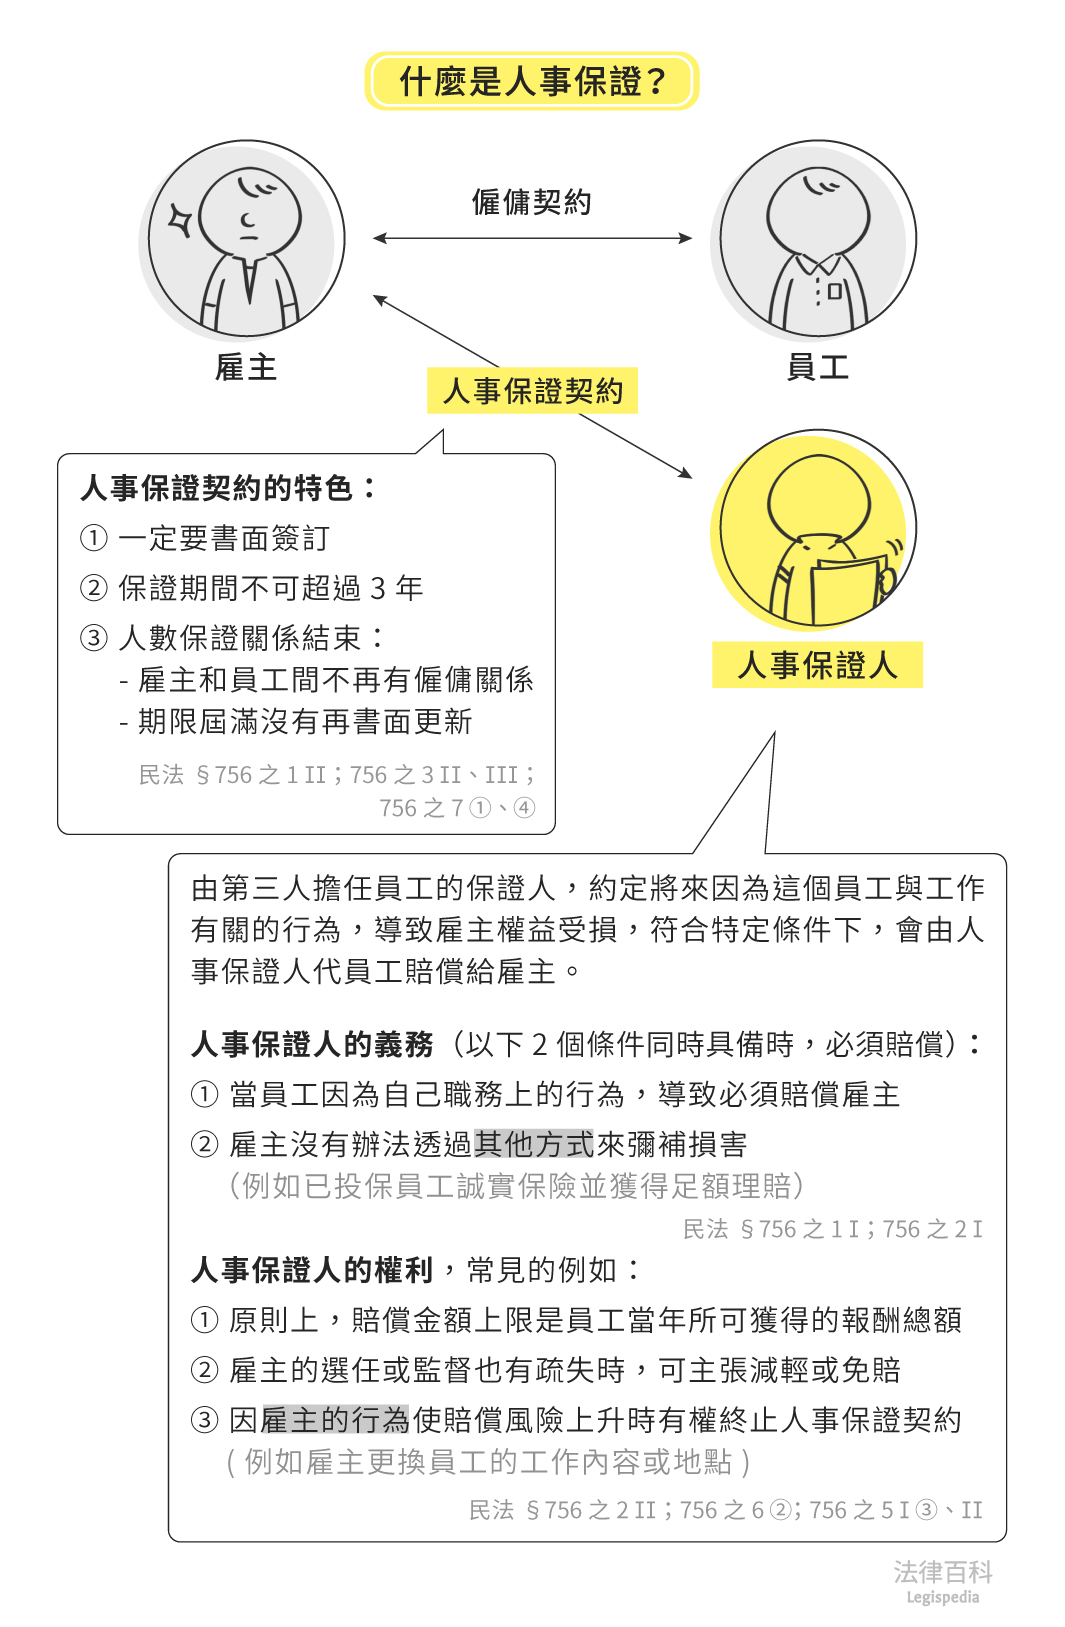 圖1　什麼是人事保證？||資料來源：黃蓮瑛、葉子齊　/　繪圖：Yen